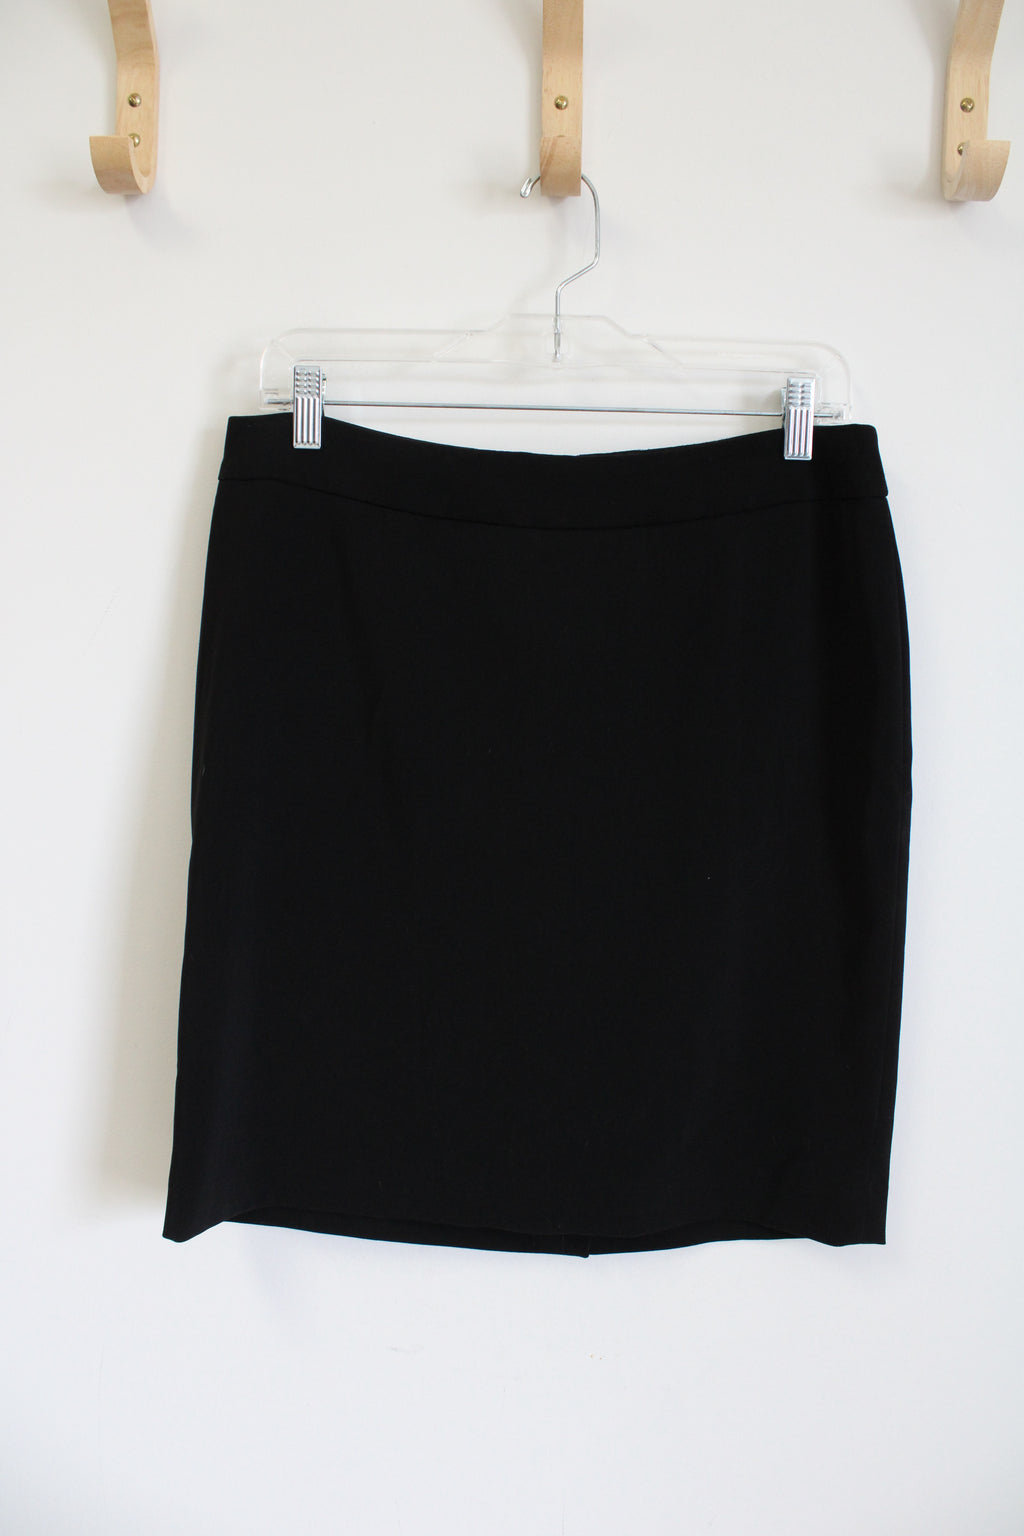 White House Black Market Skirt | 10